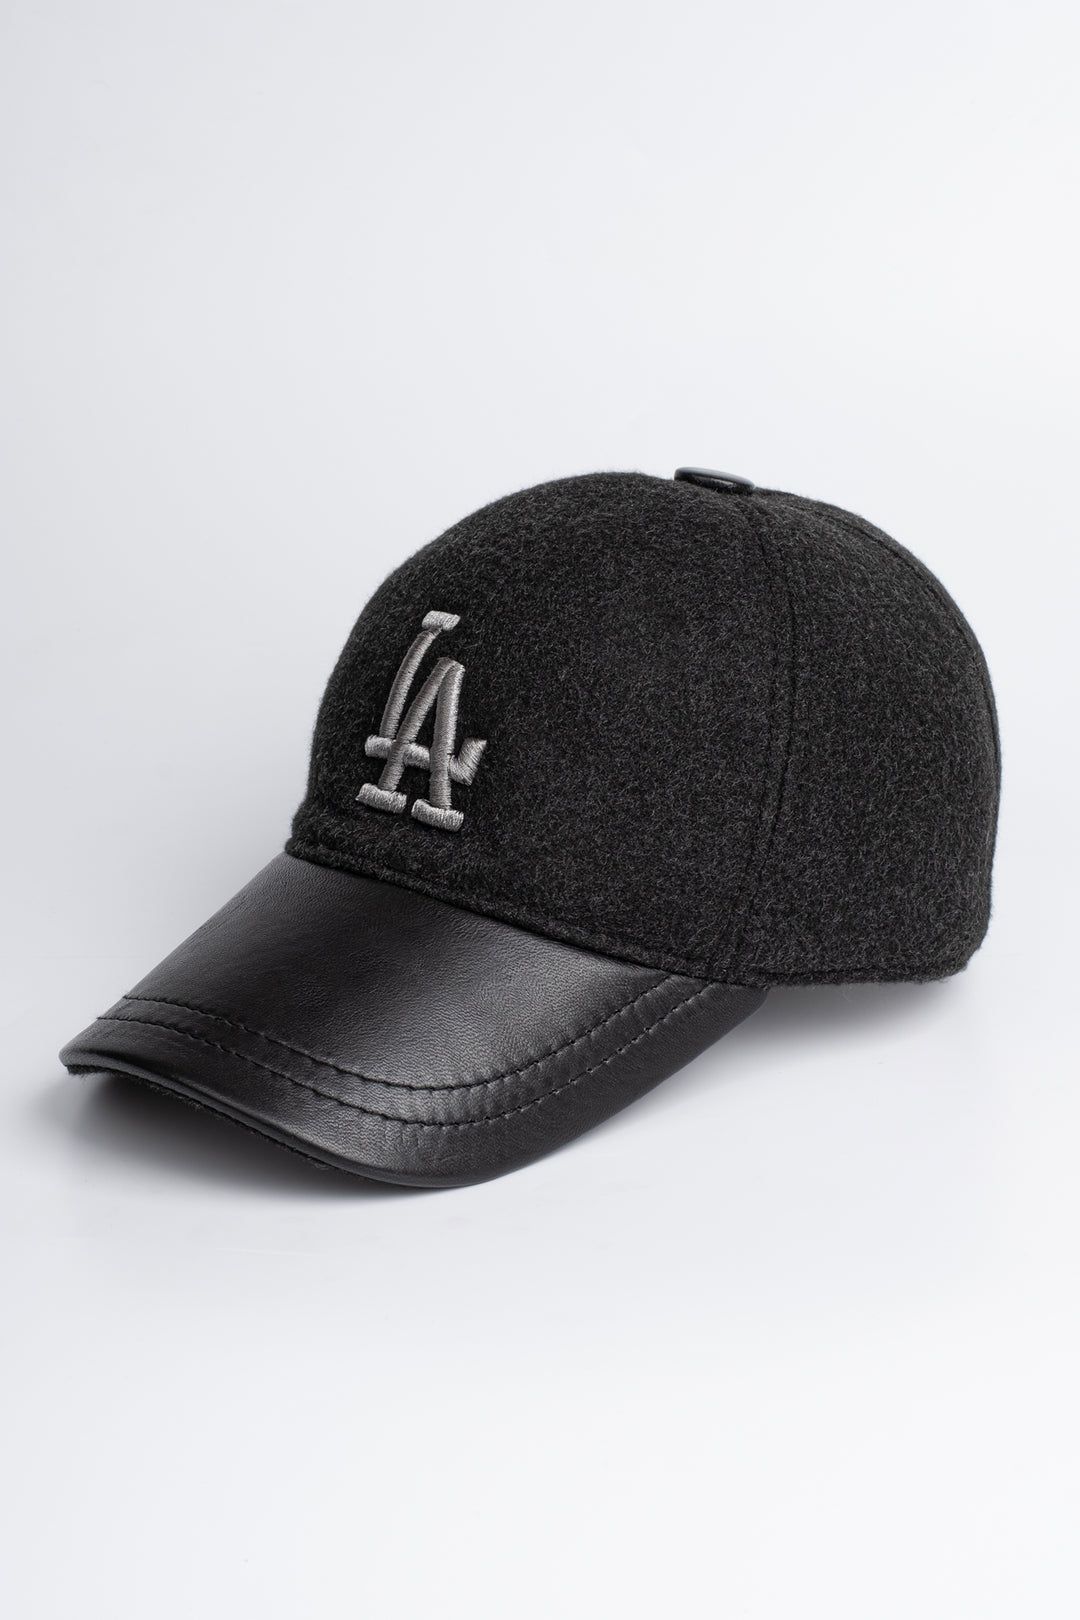 LOS ANGELES CAP